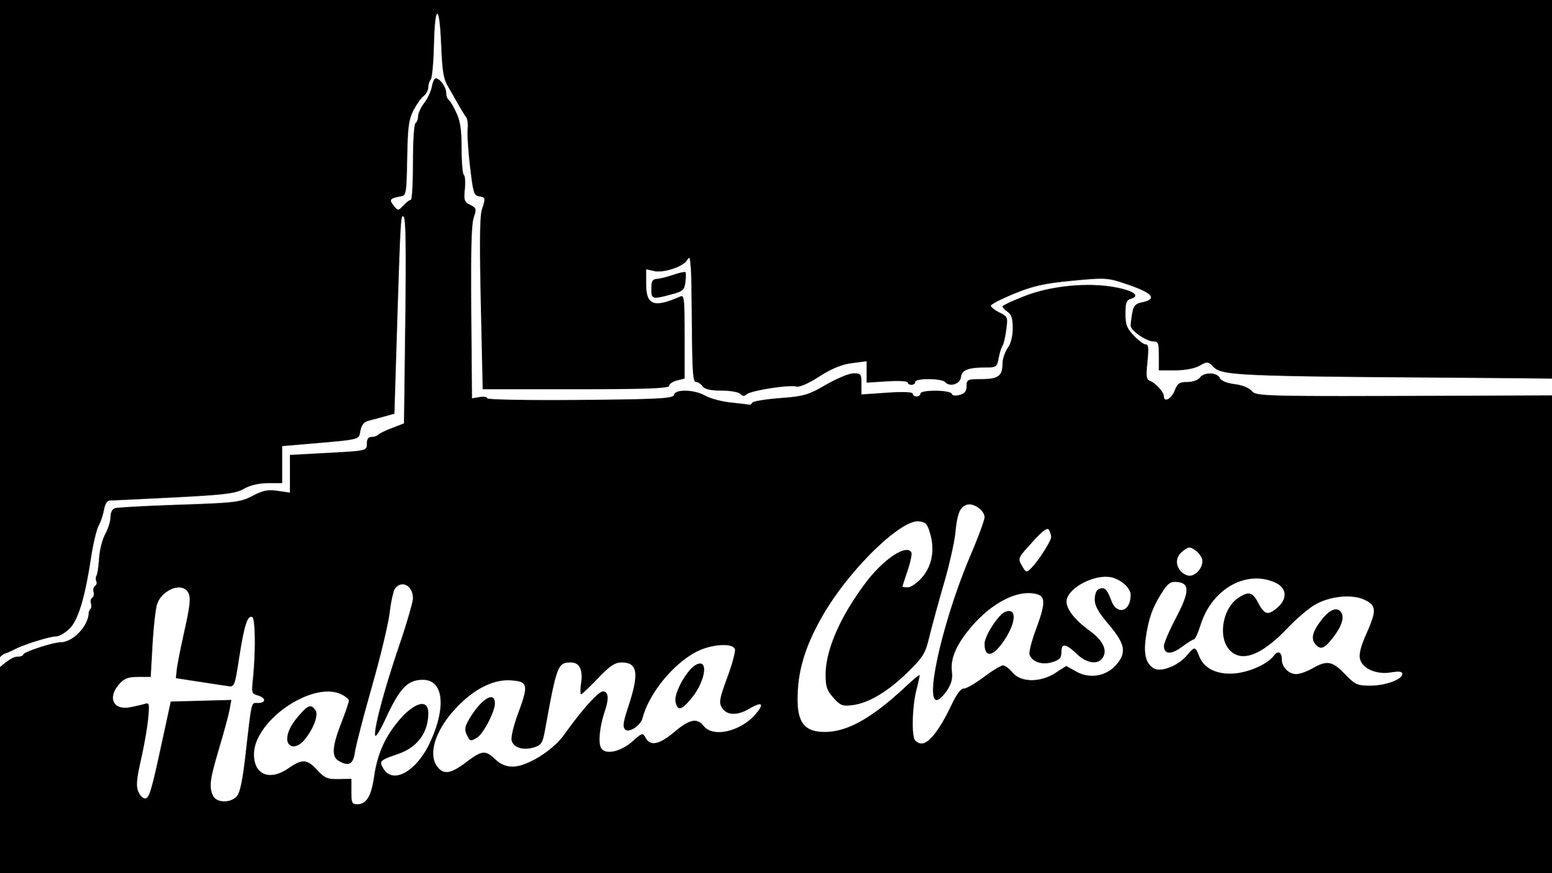 1106-Habana Clásica